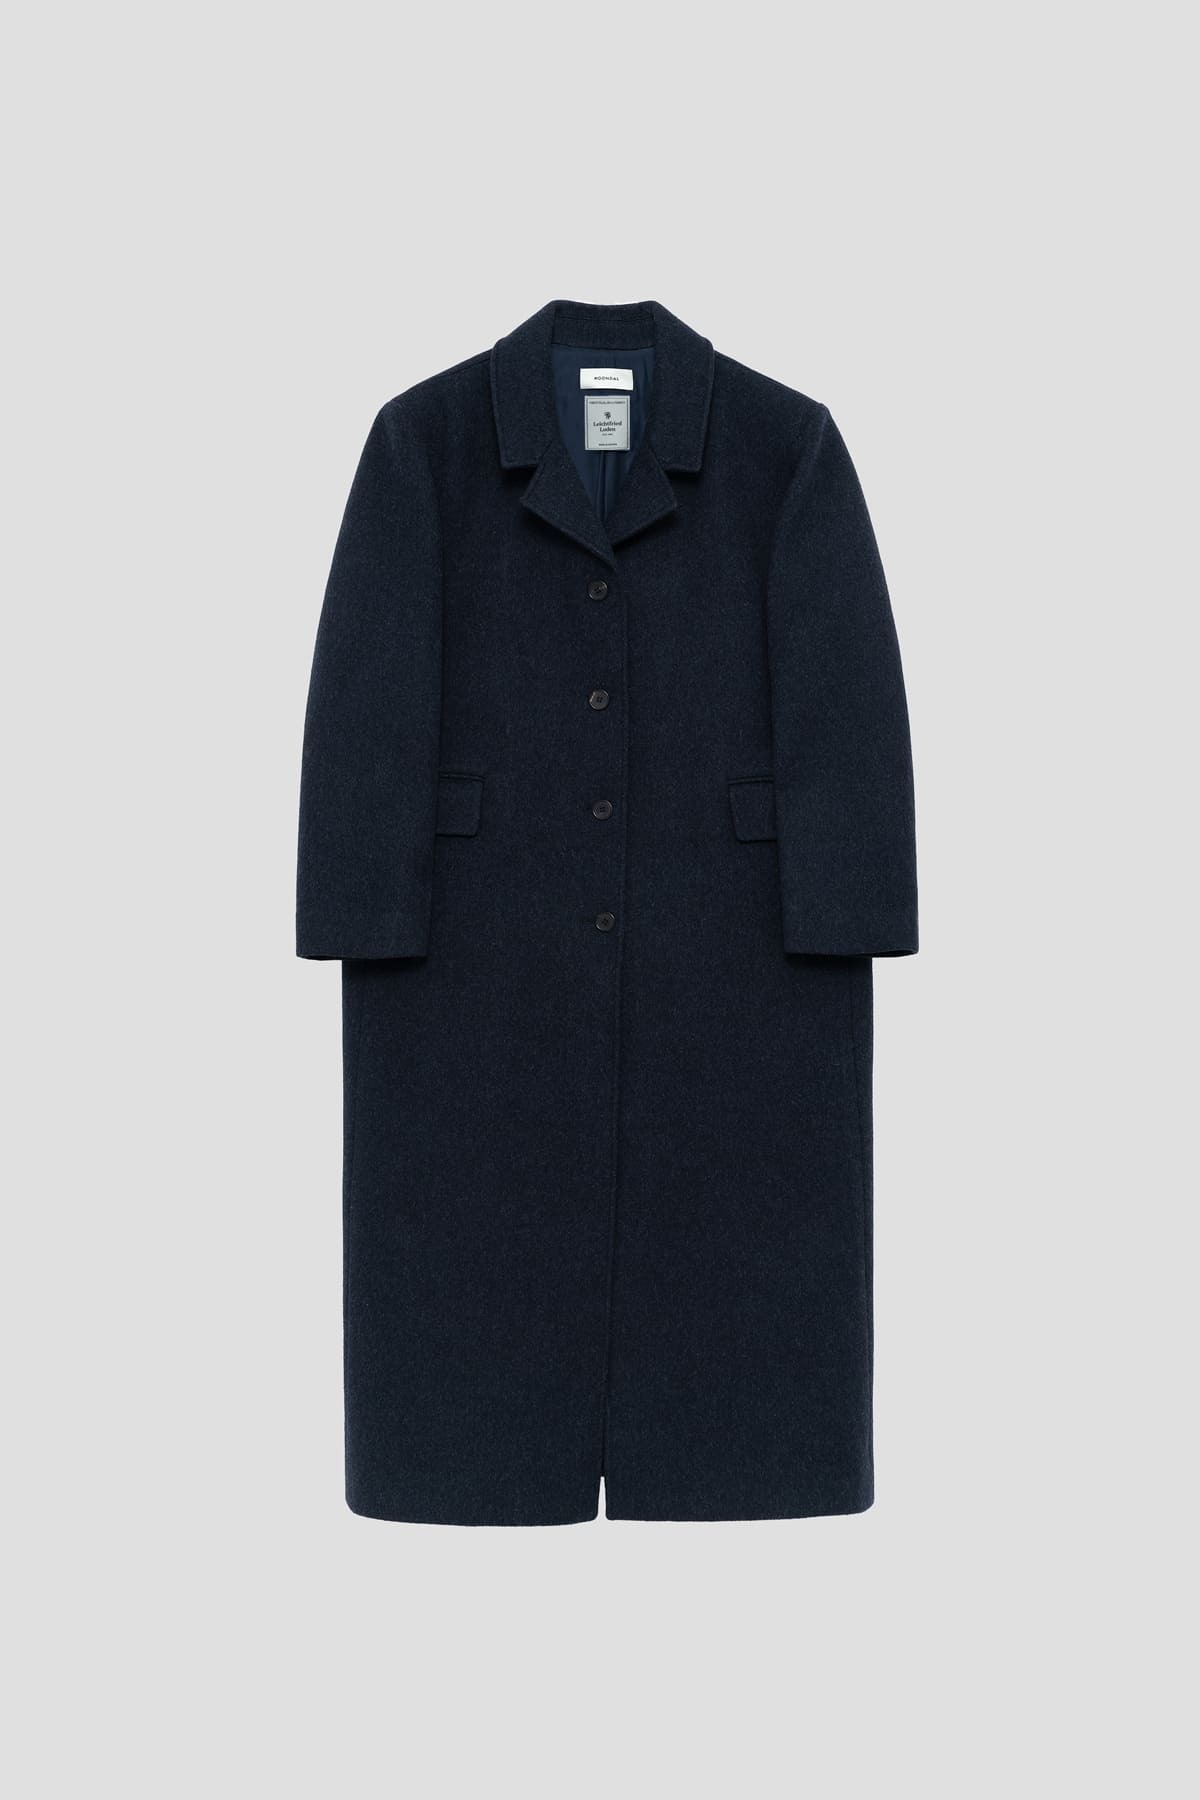 Tailored Wool Single Coat (navy)